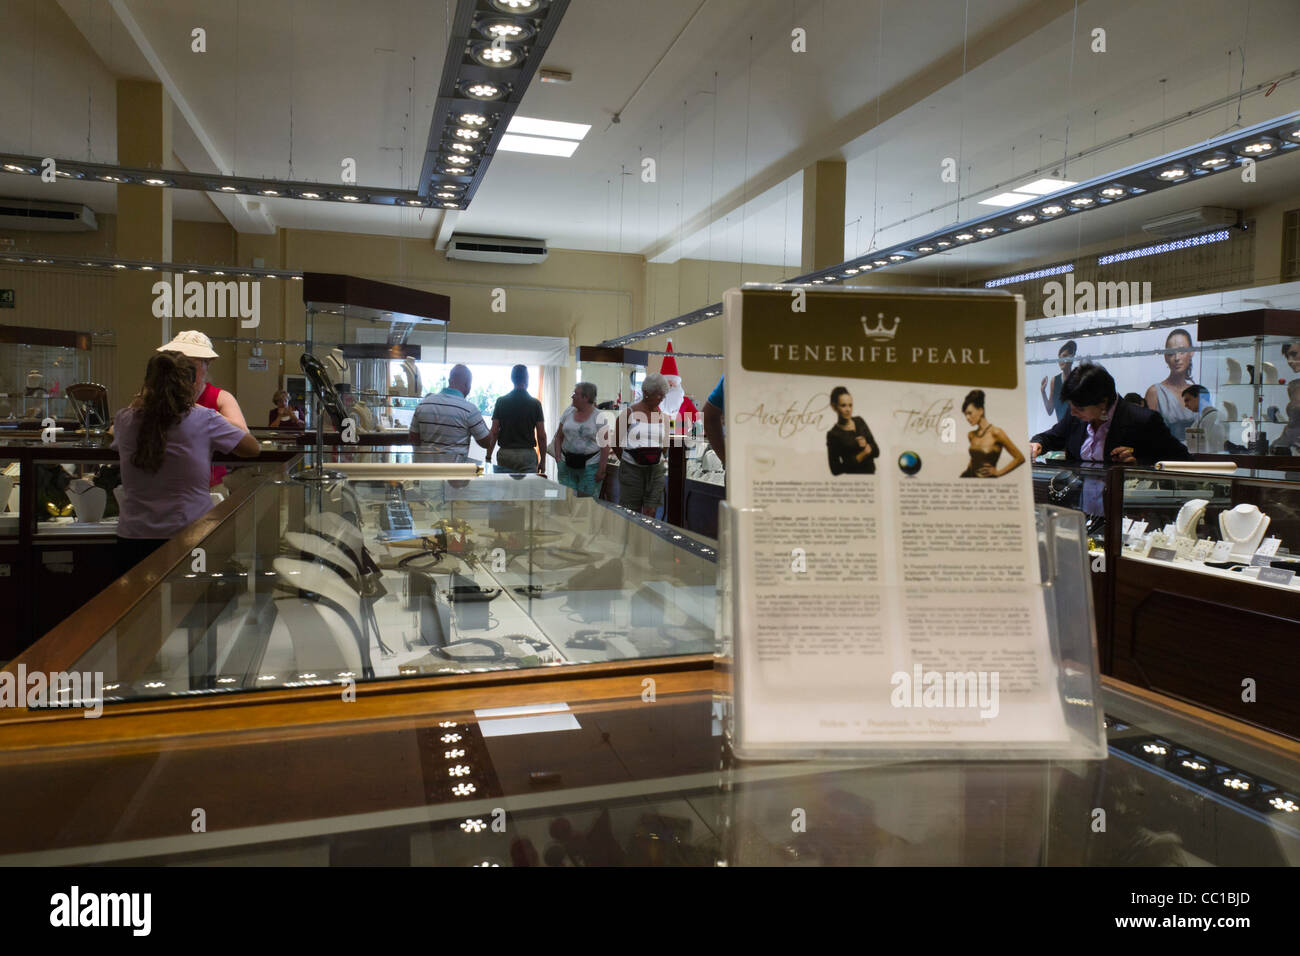 Teneriffa-Perle, Armenime, Teneriffa - Showroom für berühmte Perle Marke.  Touristen einkaufen Stockfotografie - Alamy